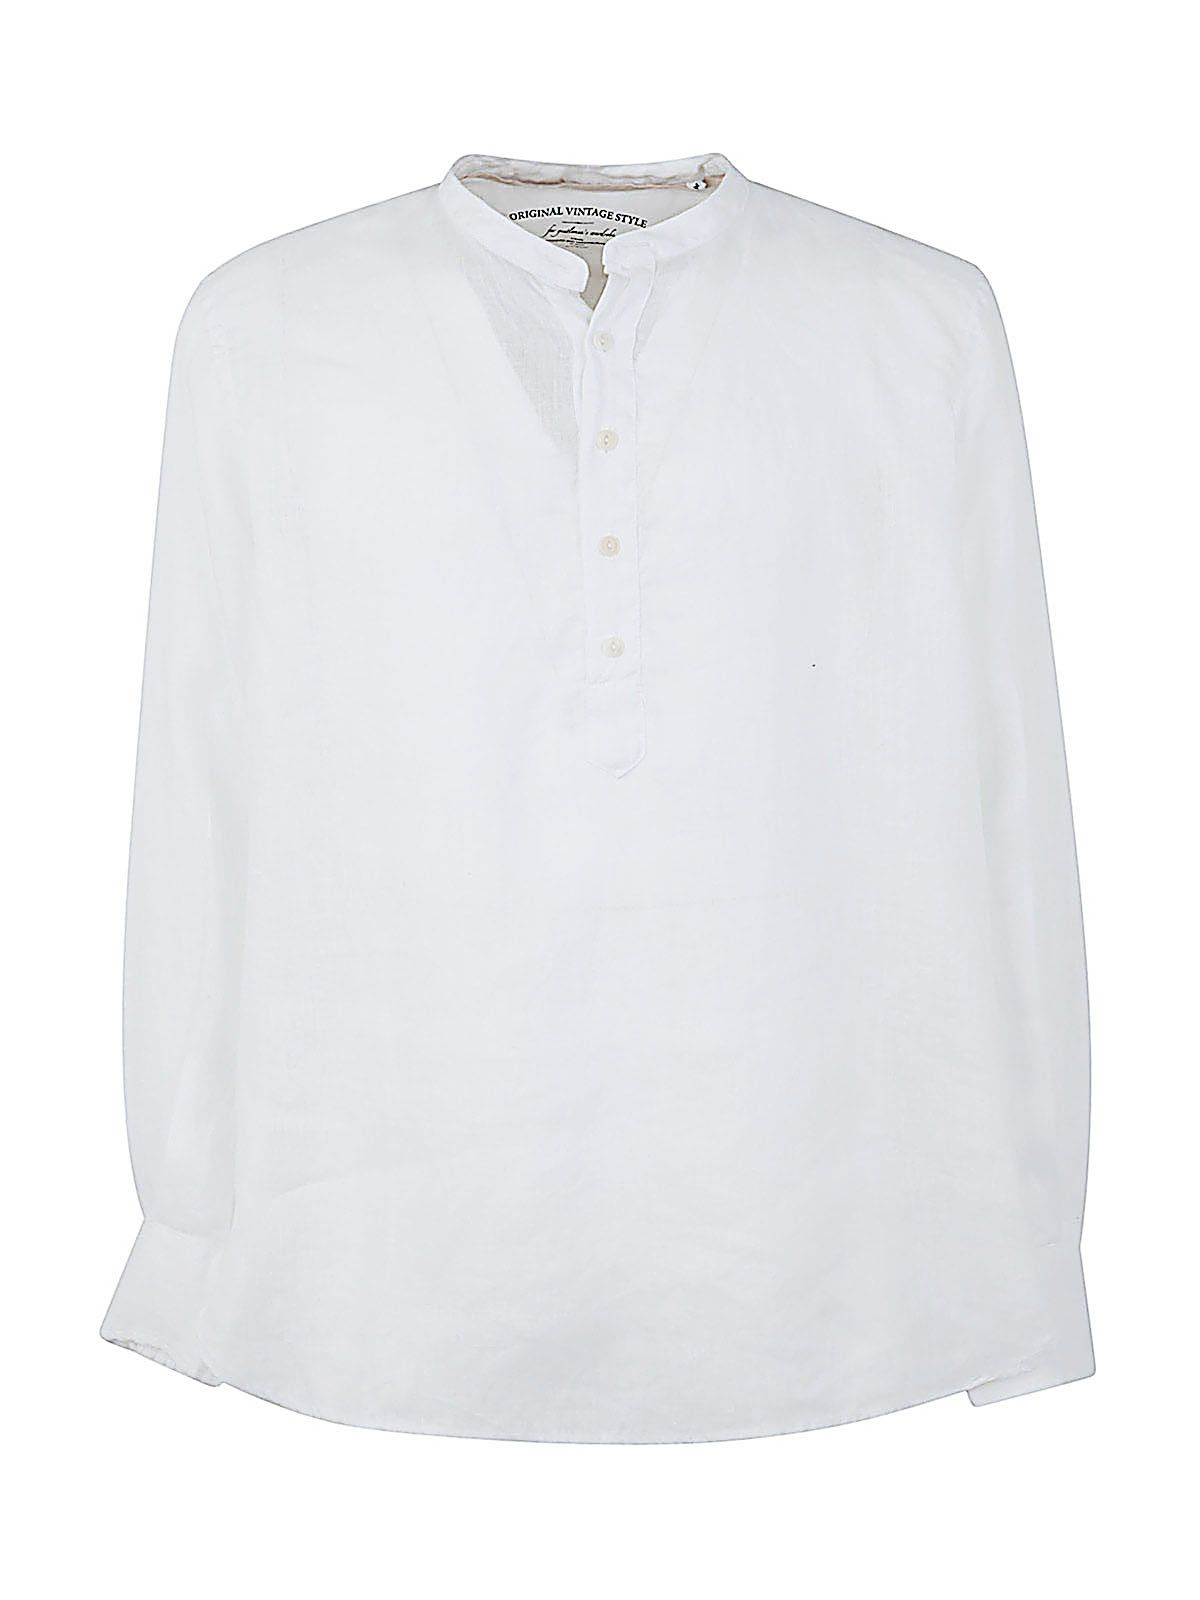 Shop Original Vintage Style Men's Collar Shirt Linen